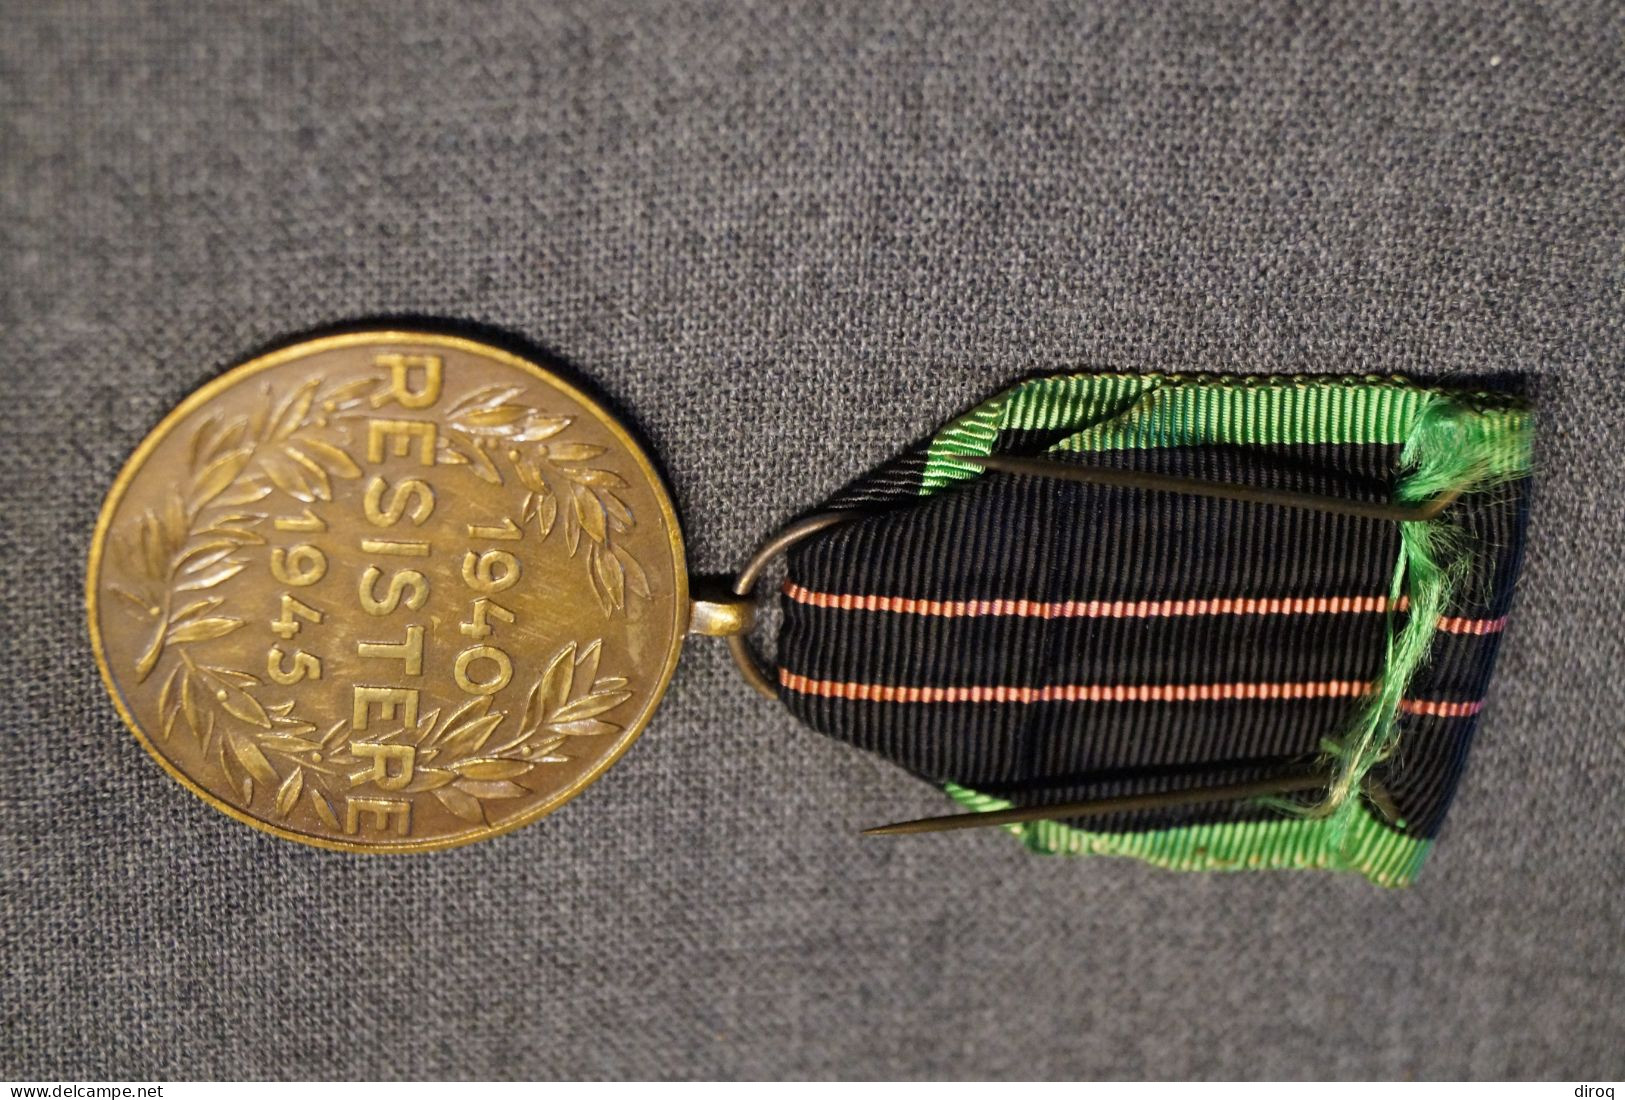 Décoration,médaille Militaire,Résistance,collection Militaria - Belgique